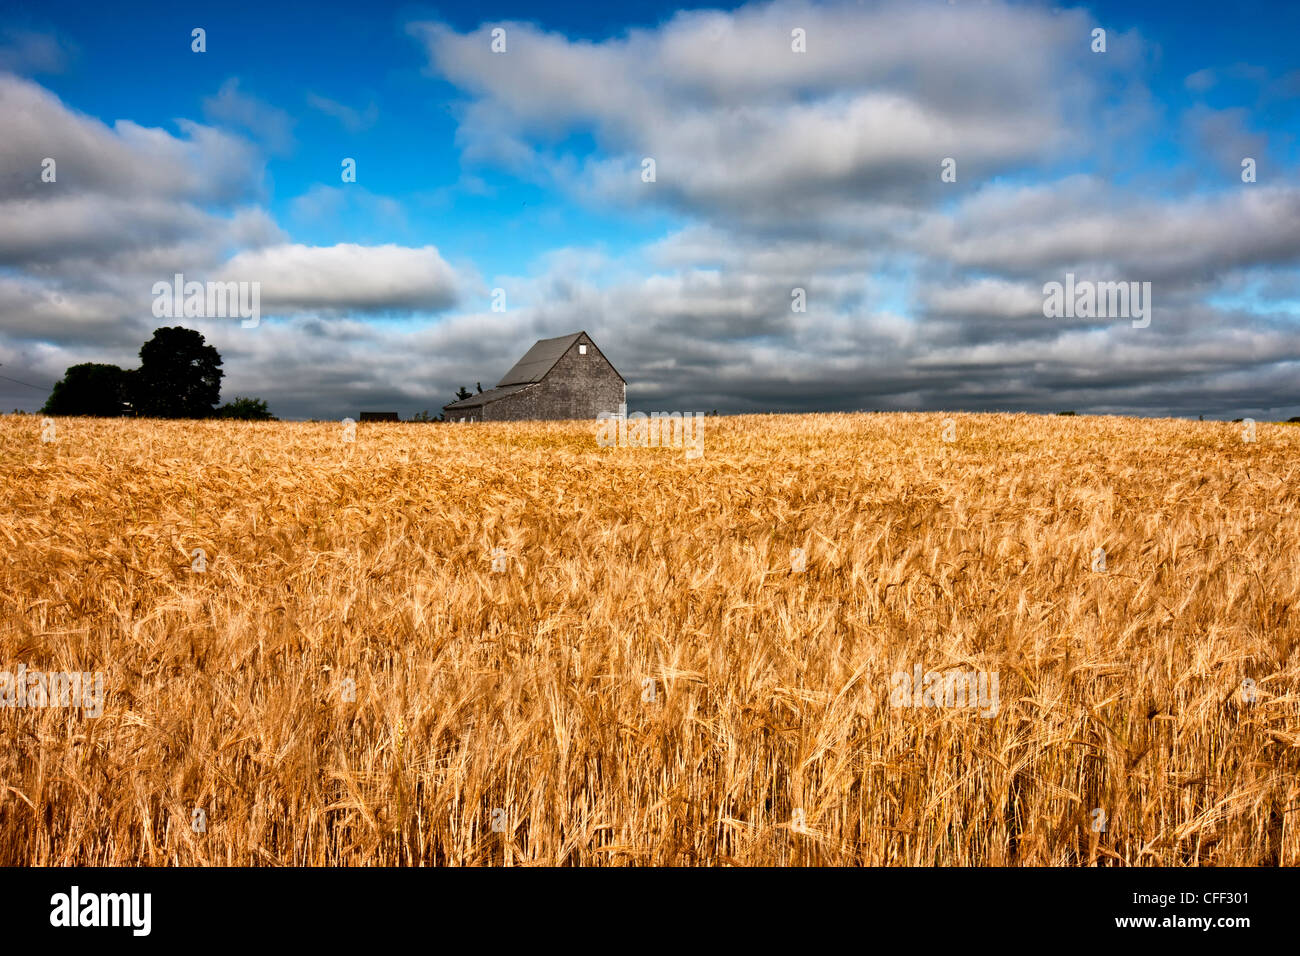 Grange et champ de blé, Guernsey Cove, Prince Edward Island, Canada Banque D'Images